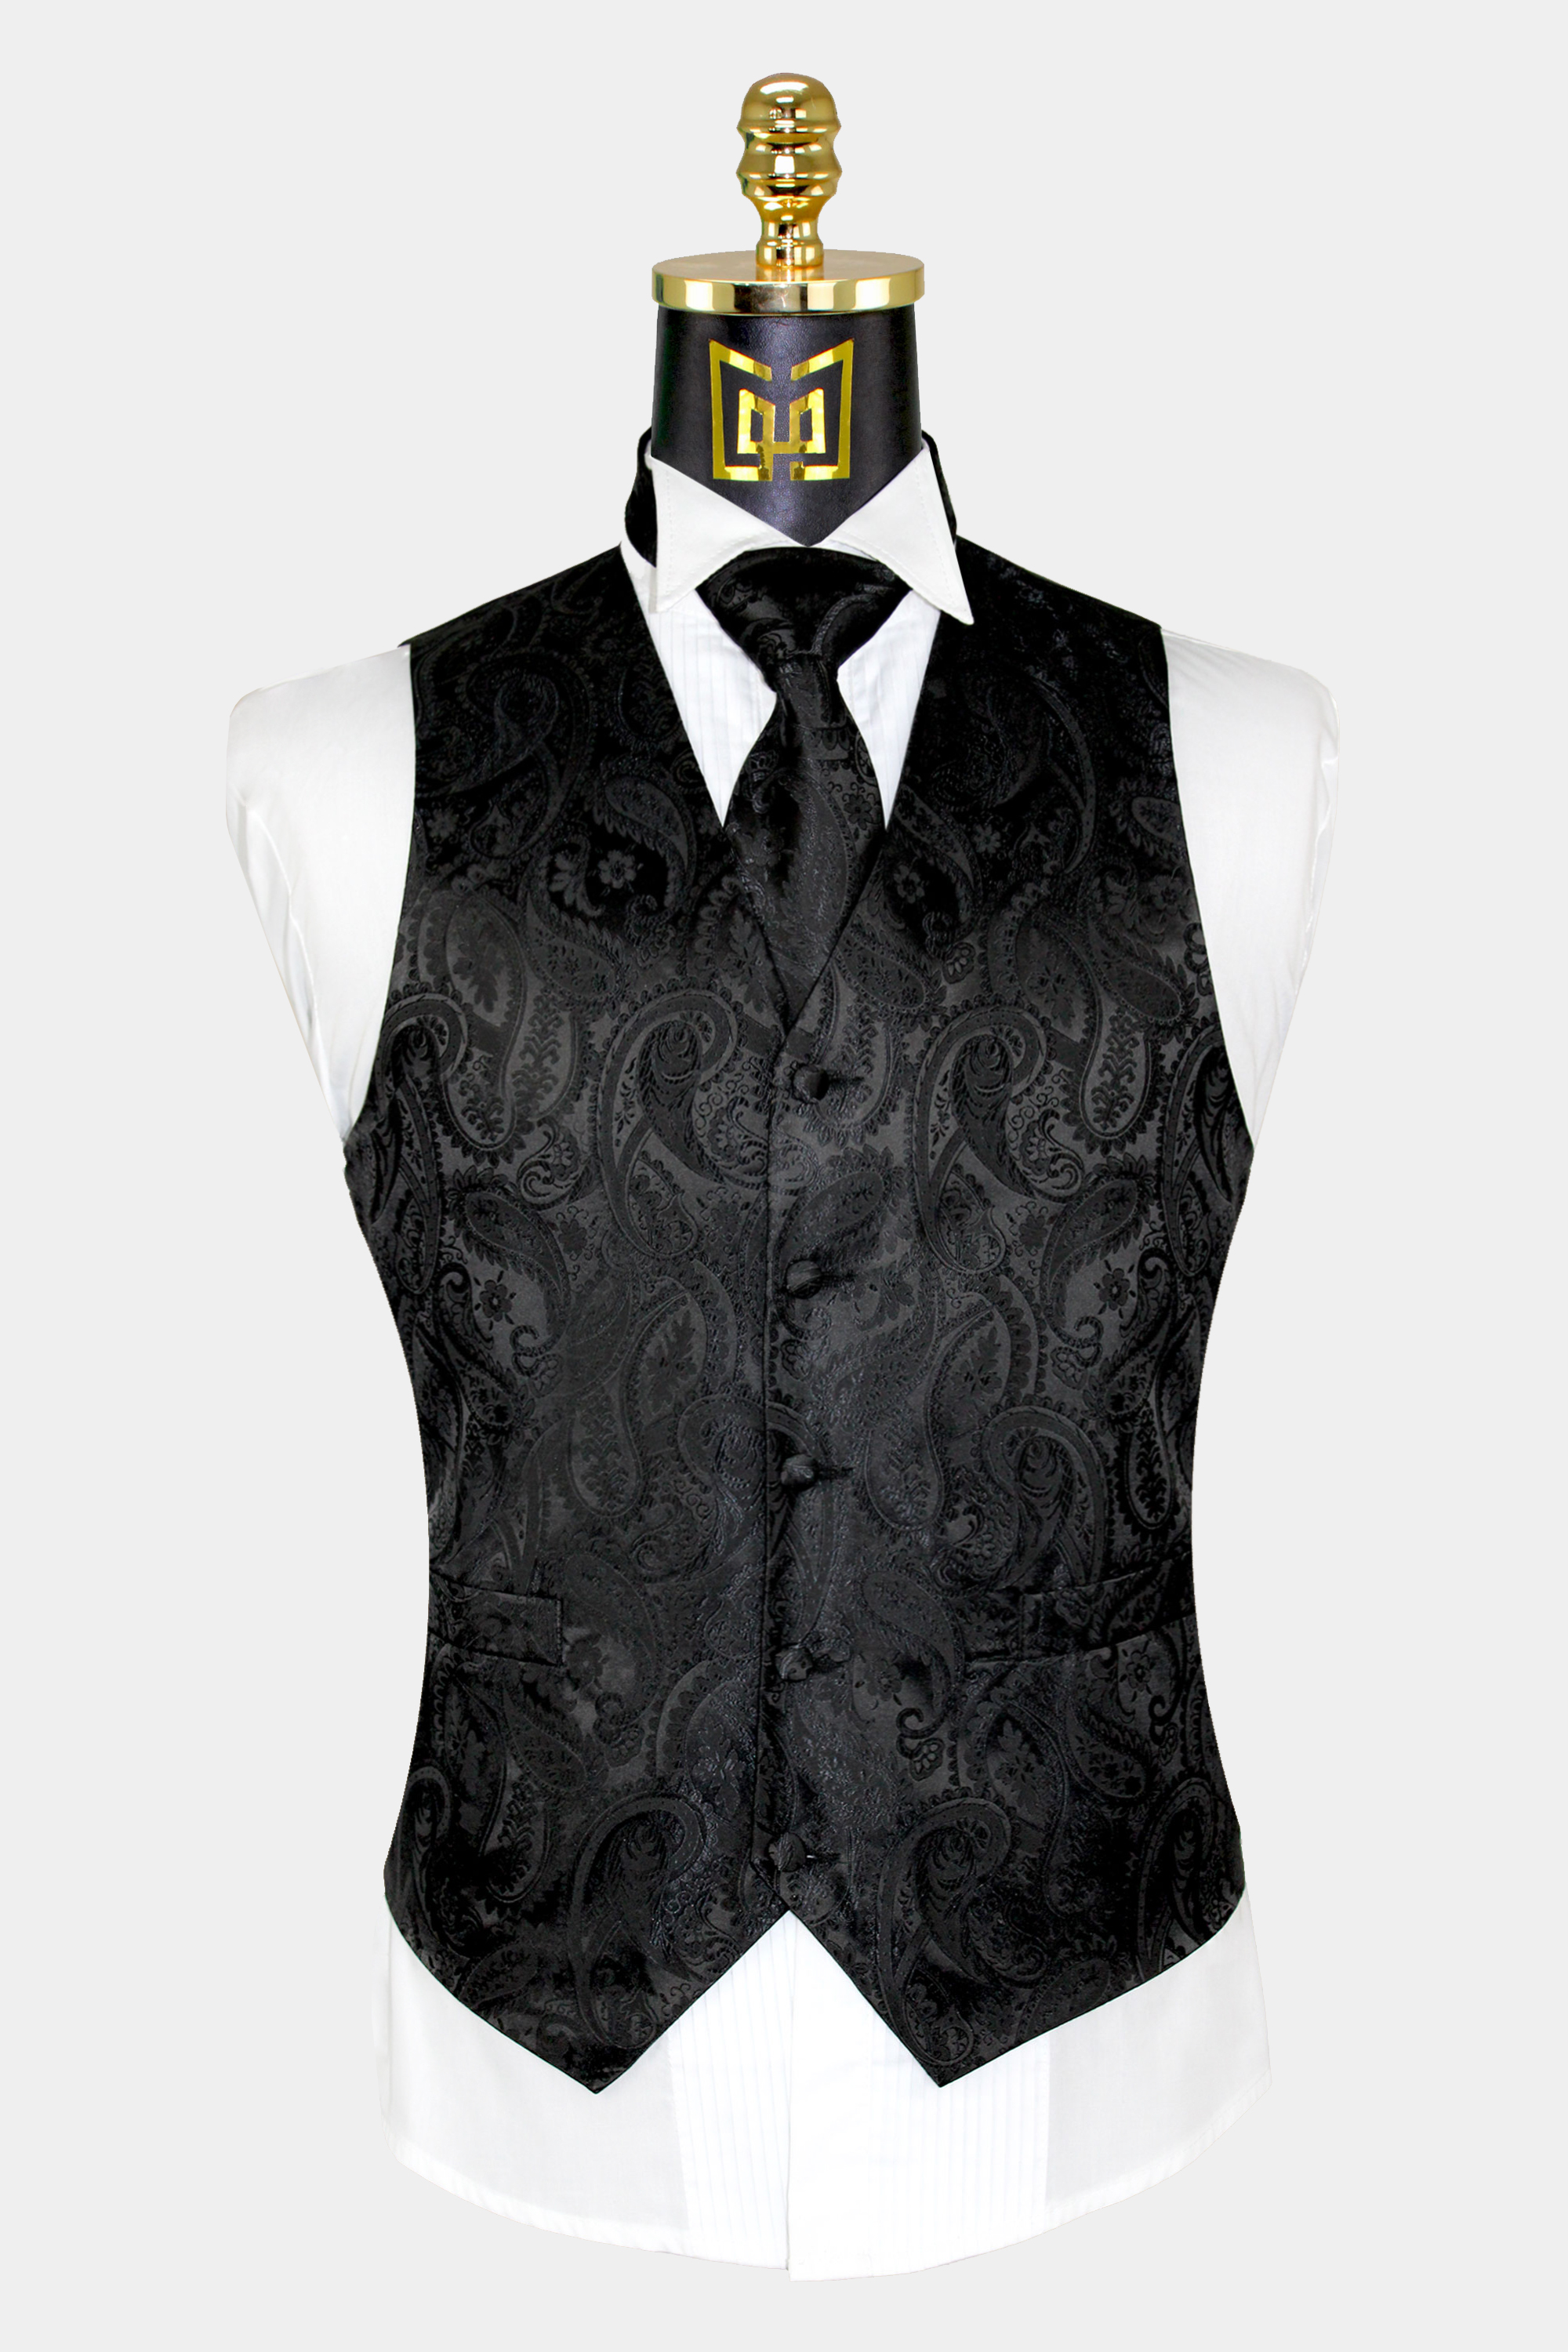 Mens-Black-Paisley-Vest-and-Tie-Set-Wedding-Groom-Tuxedo-Vest-from-Gentlemansguru.com_